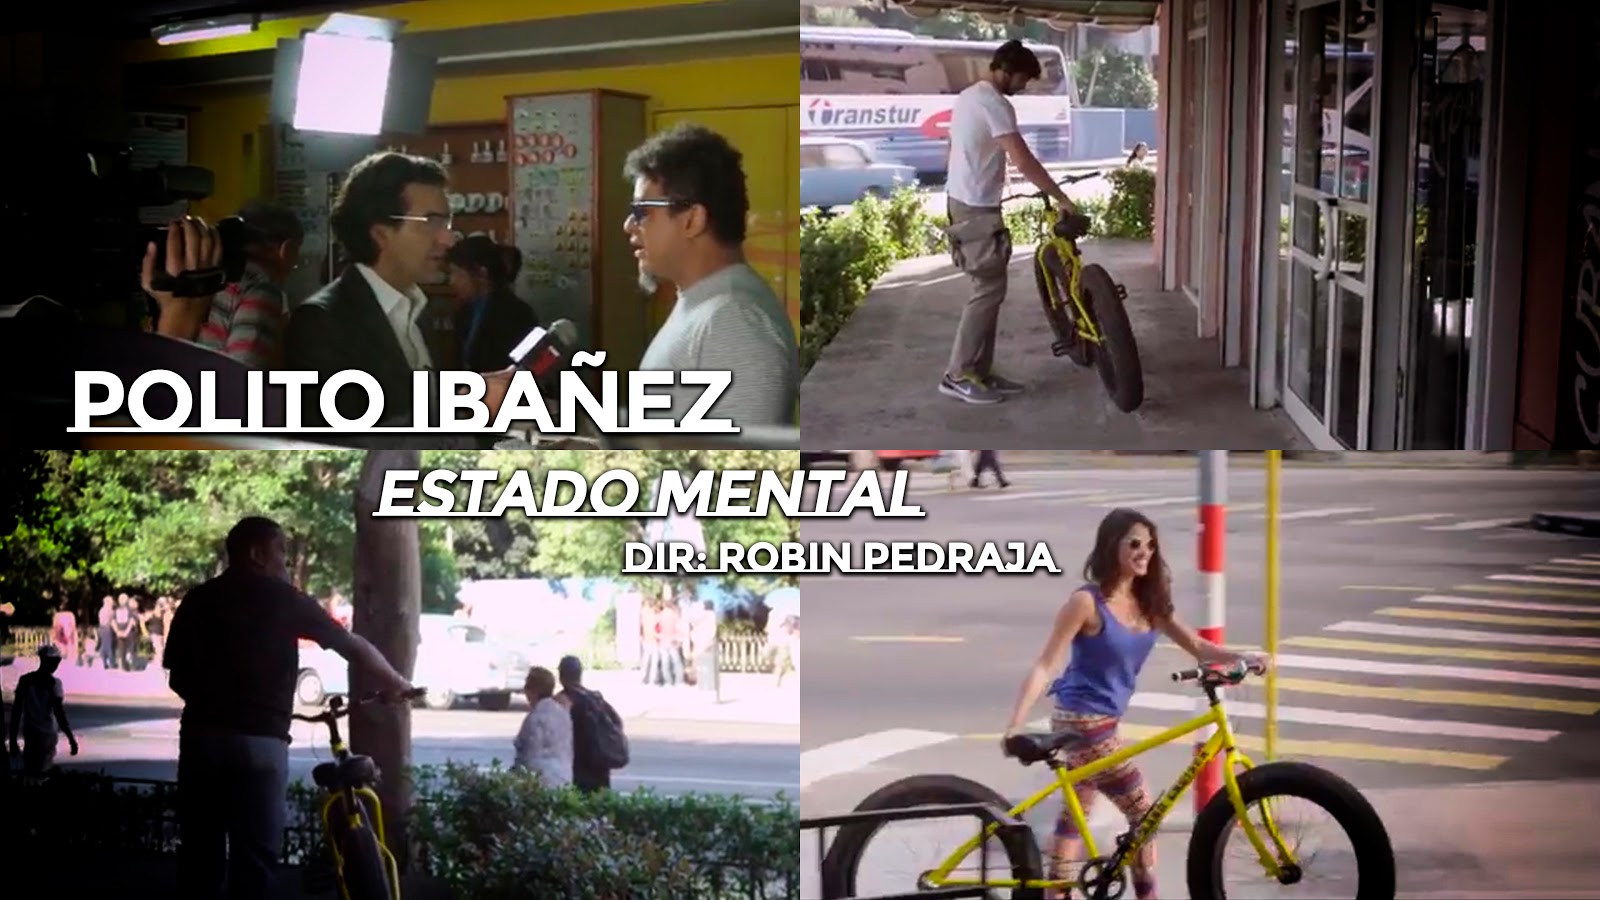 Polito Ibáñez - ¨Estado mental¨ - Videoclip - Dirección: Robin Pedraja. Portal del Vídeo Clip Cubano